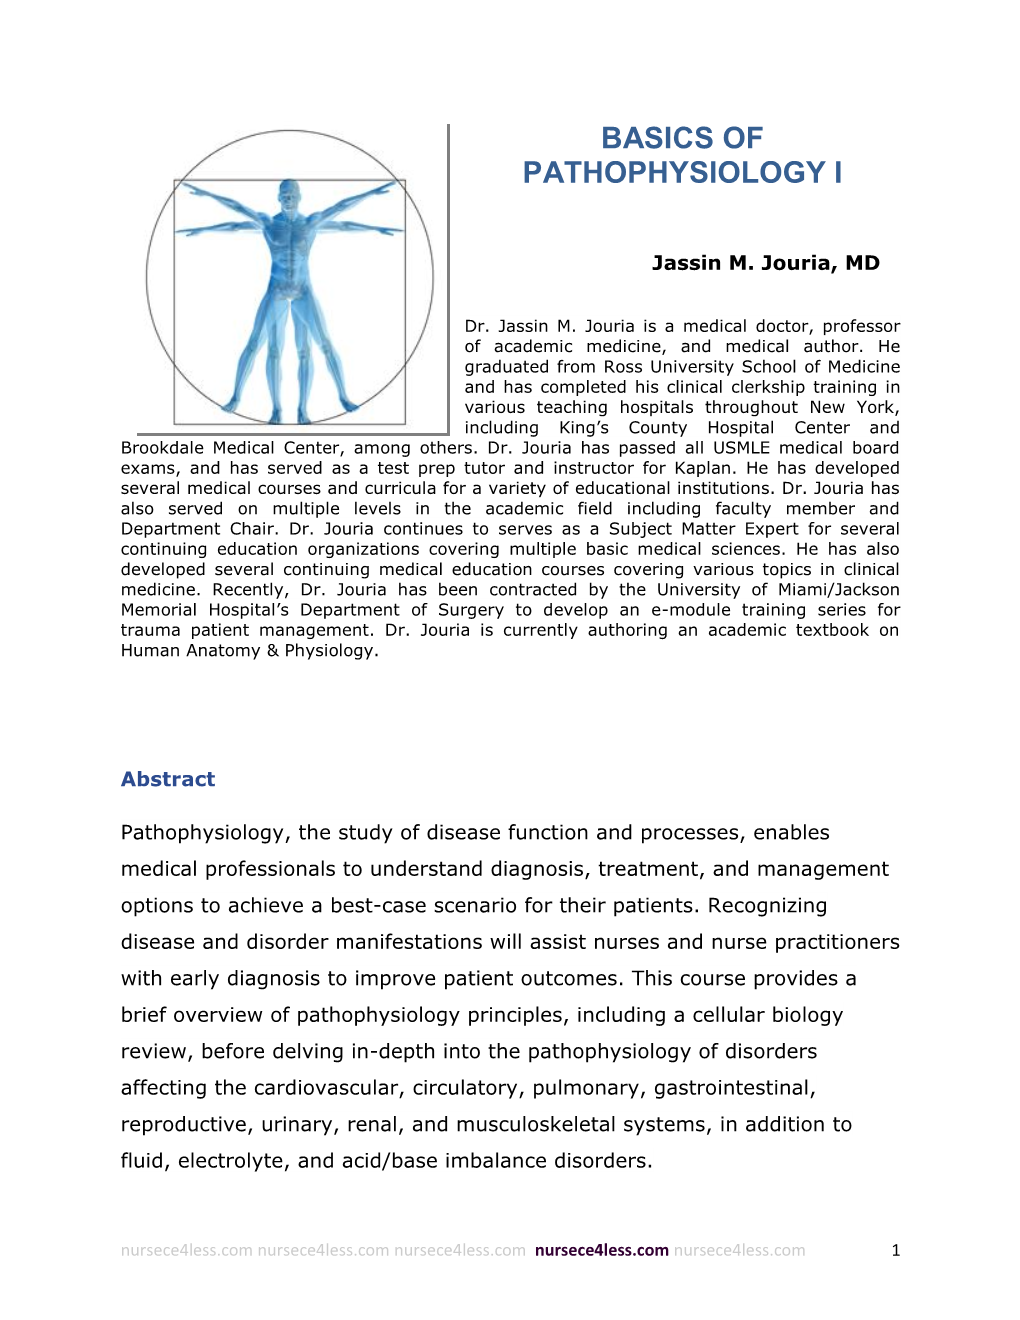 Basics of Pathophysiology I